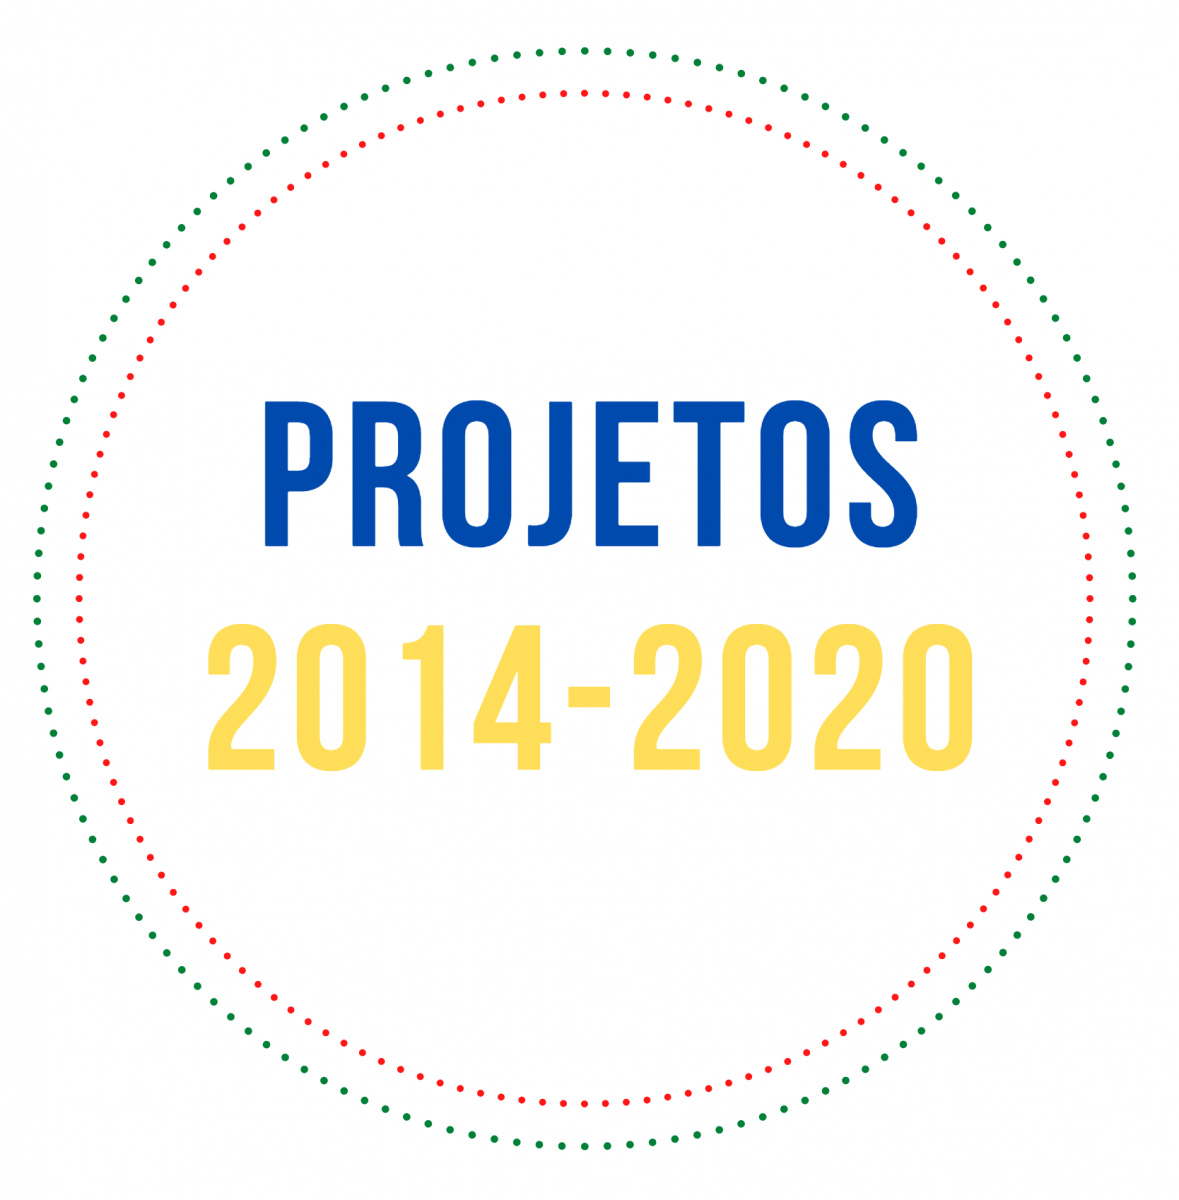 Projetos 2014-2020